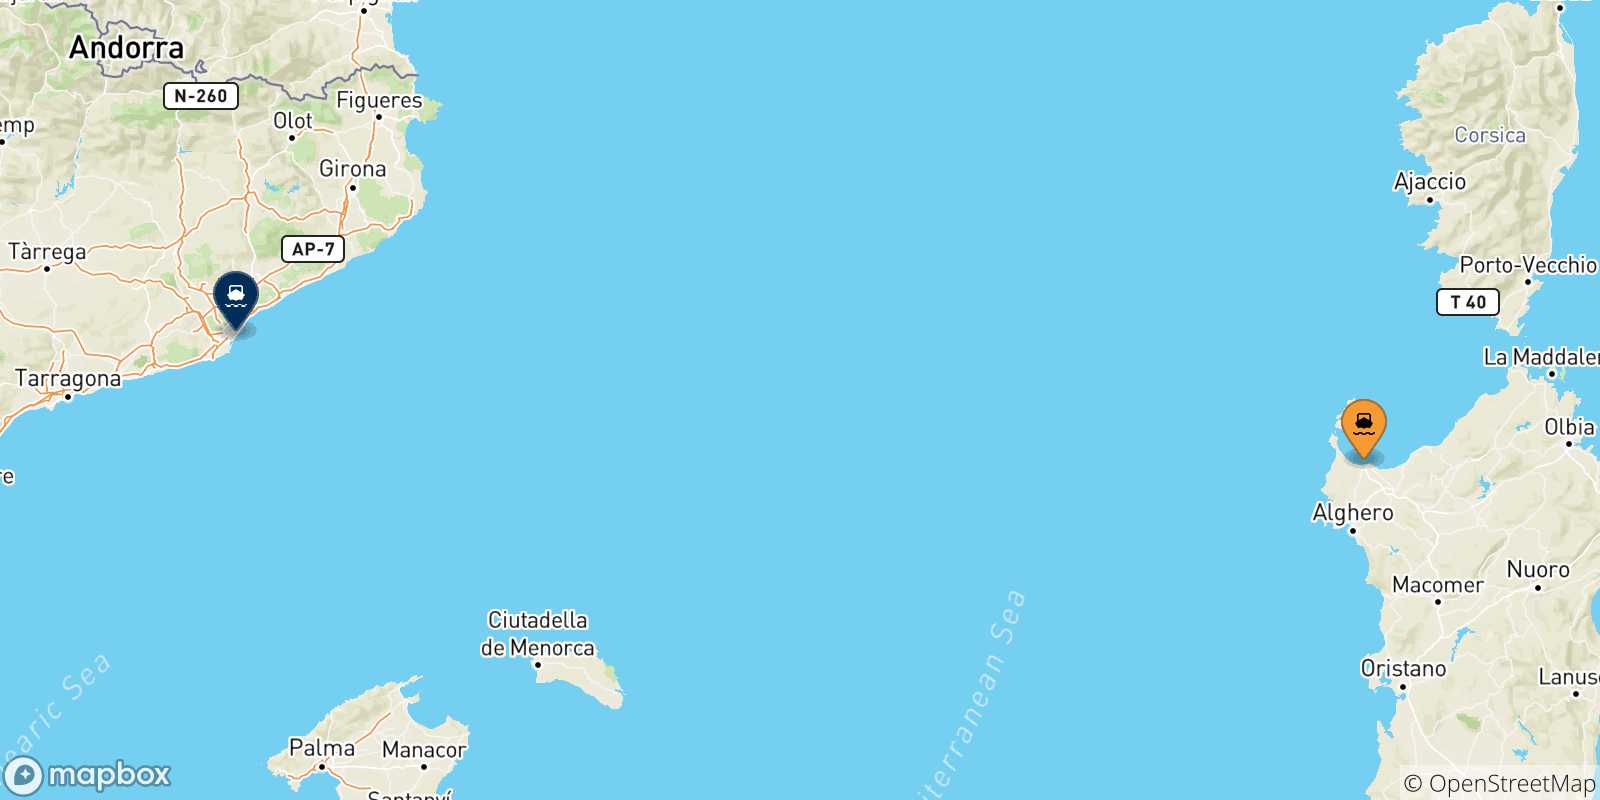 Mappa delle possibili rotte tra la Sardegna e la Spagna